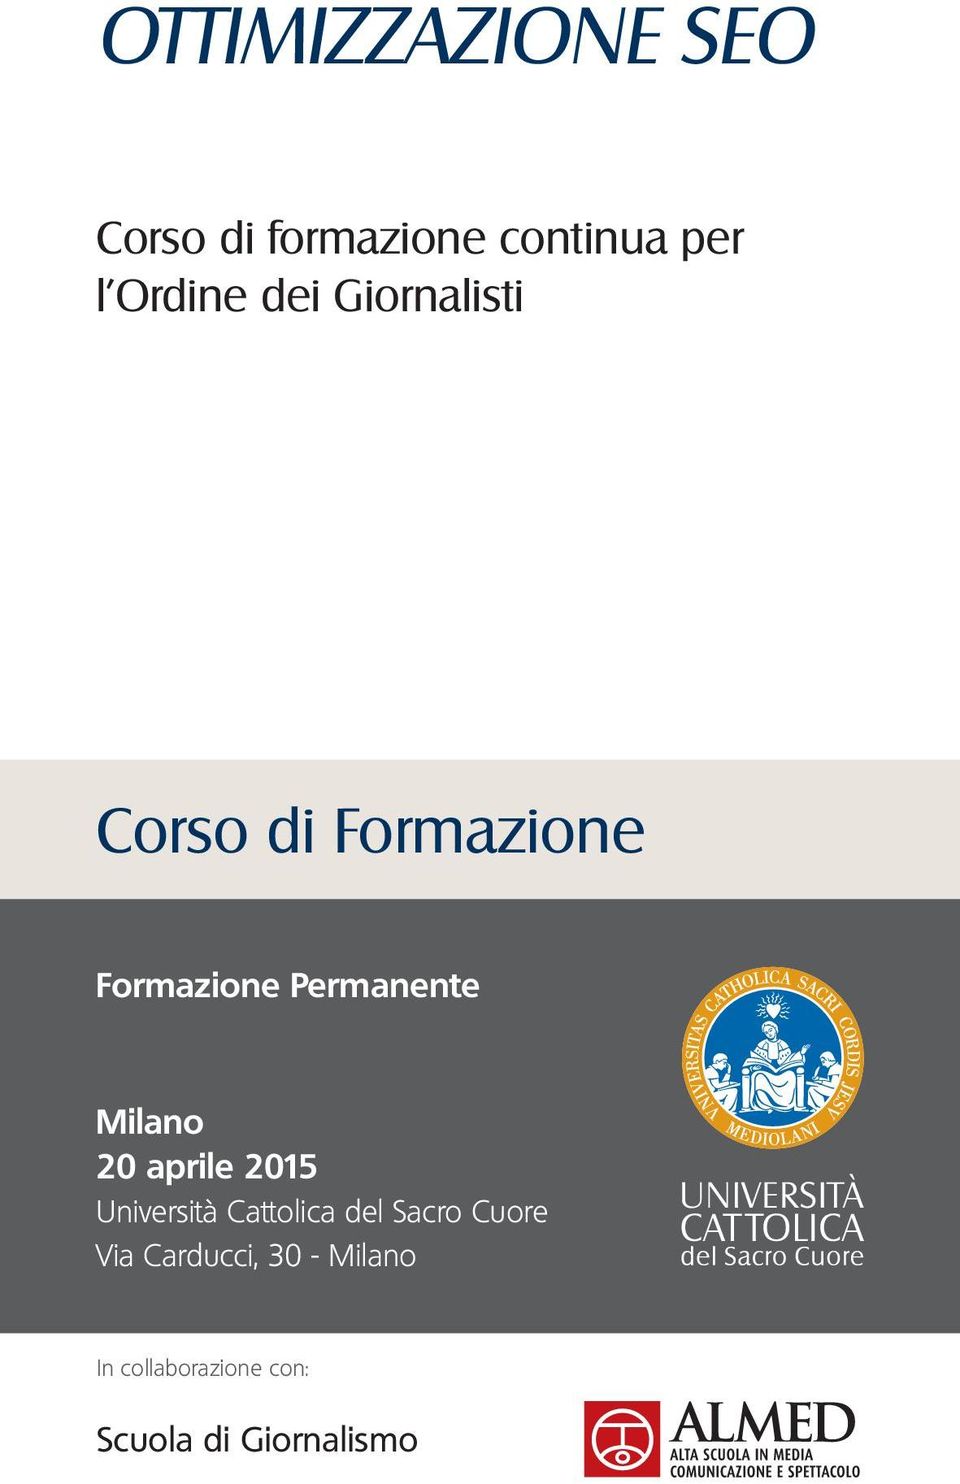 Milano 20 aprile 2015 Università Cattolica del Sacro Cuore